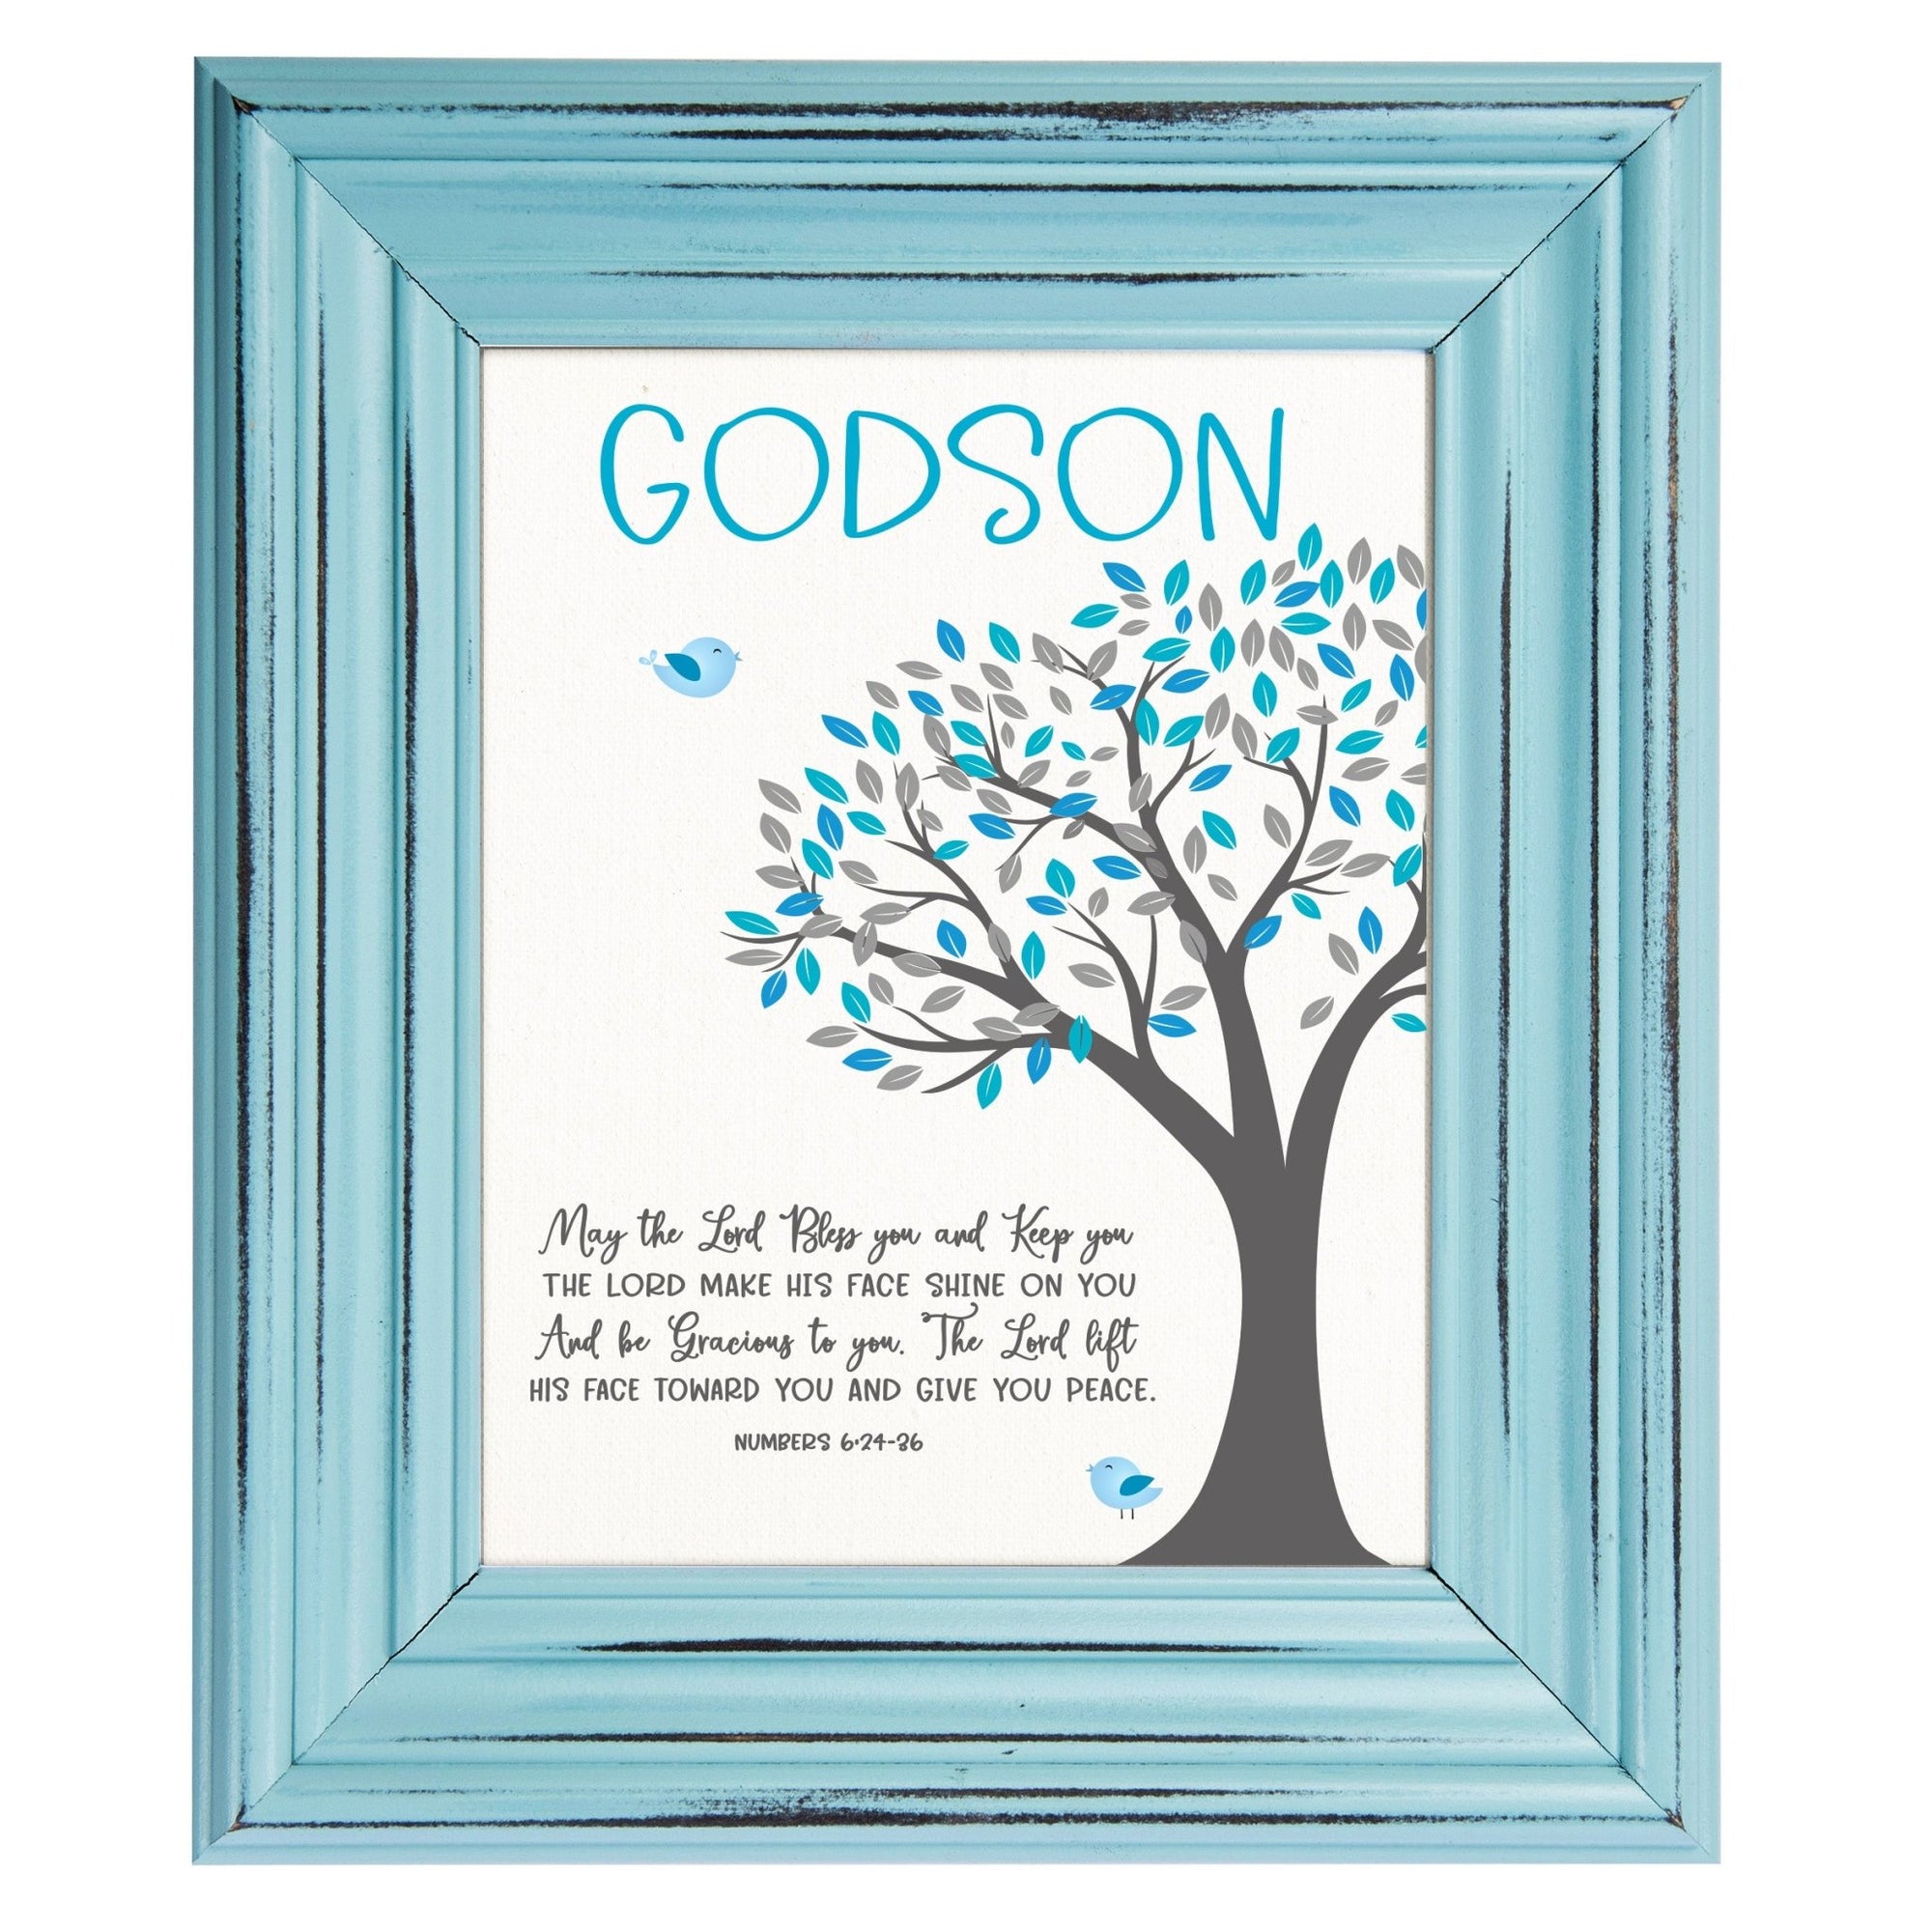 Framed wall décor baptism gift for godchild